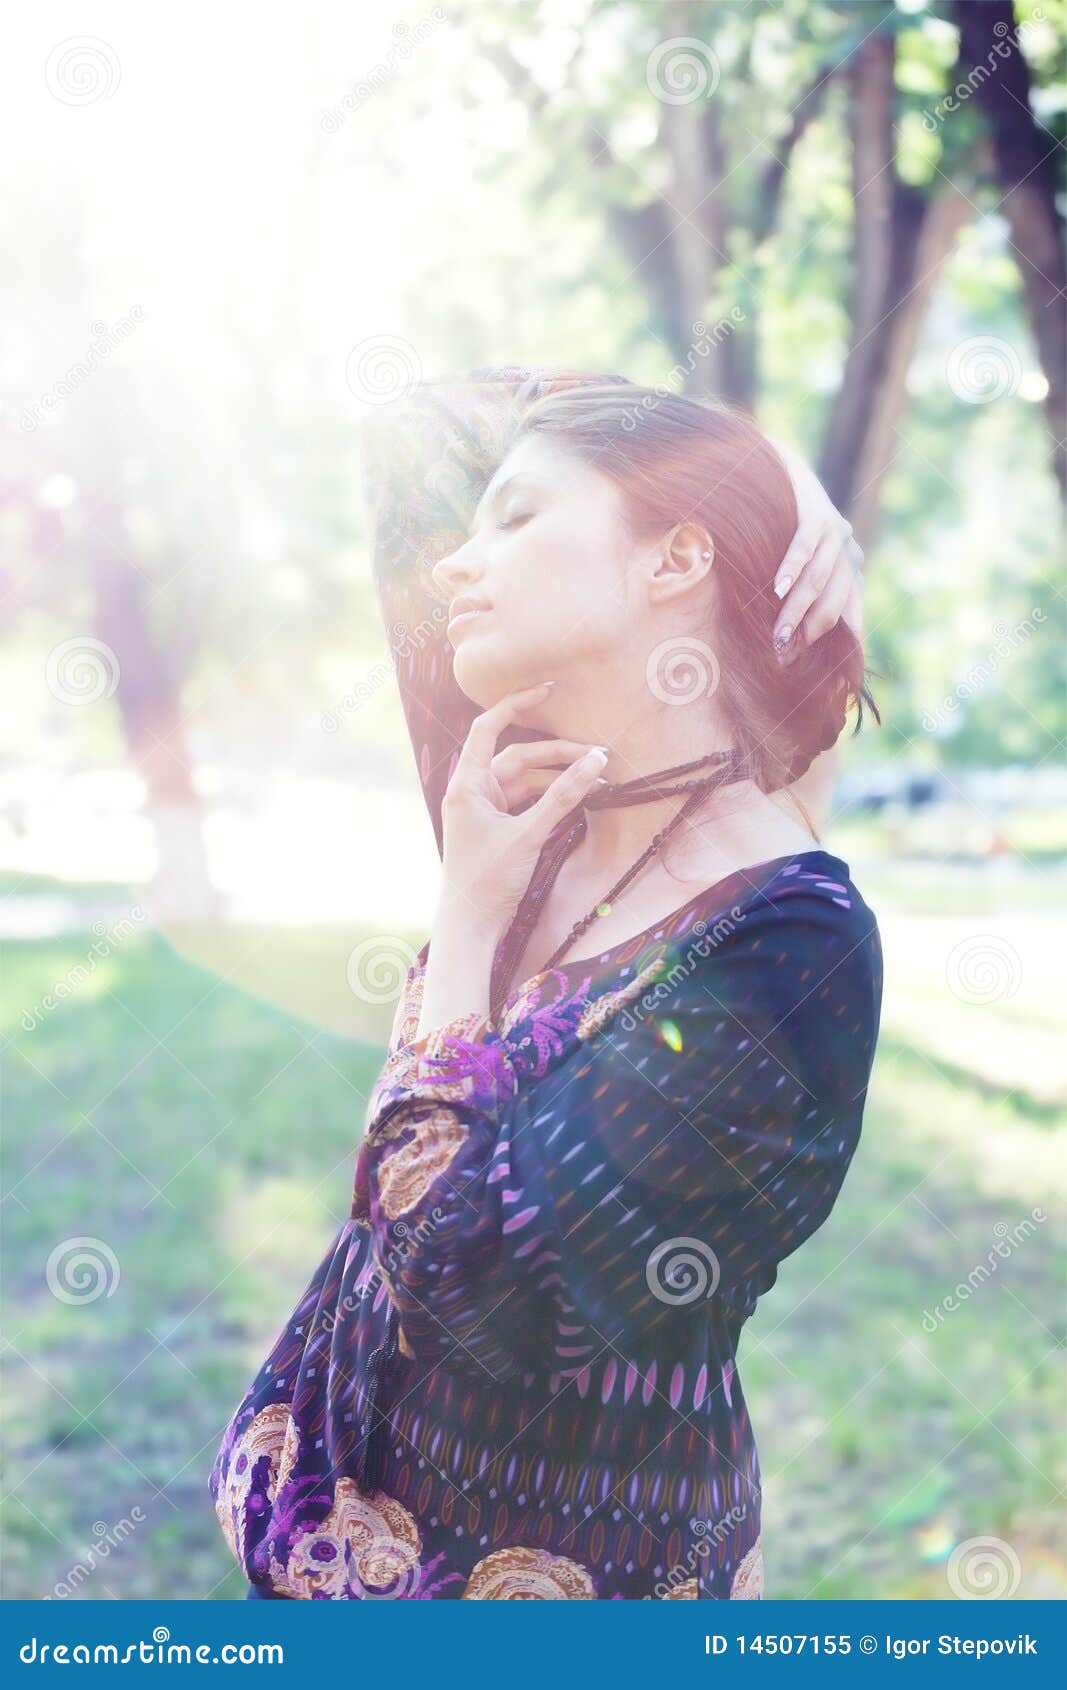 young woman enjoys sun beams at spring park